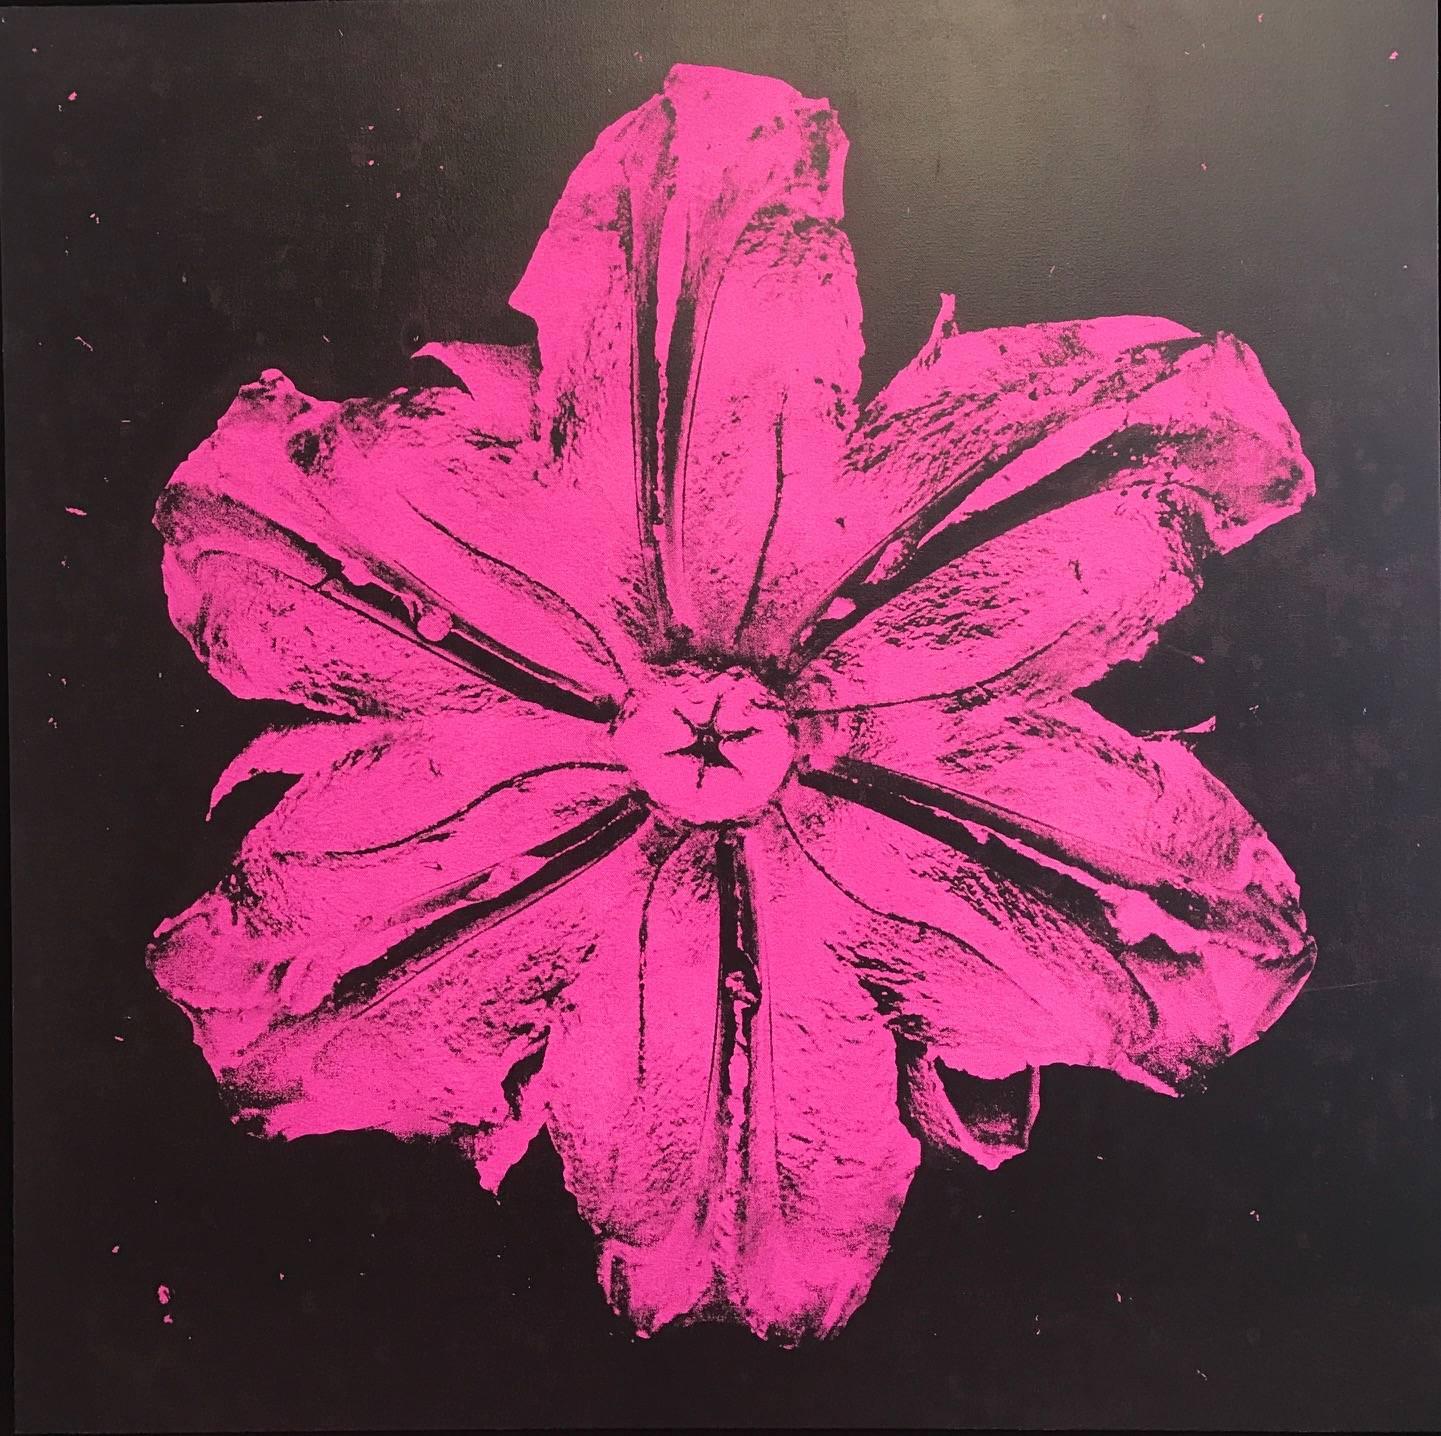 Power Flower N-3 (Pink on black) - Painting by Rubem Robierb